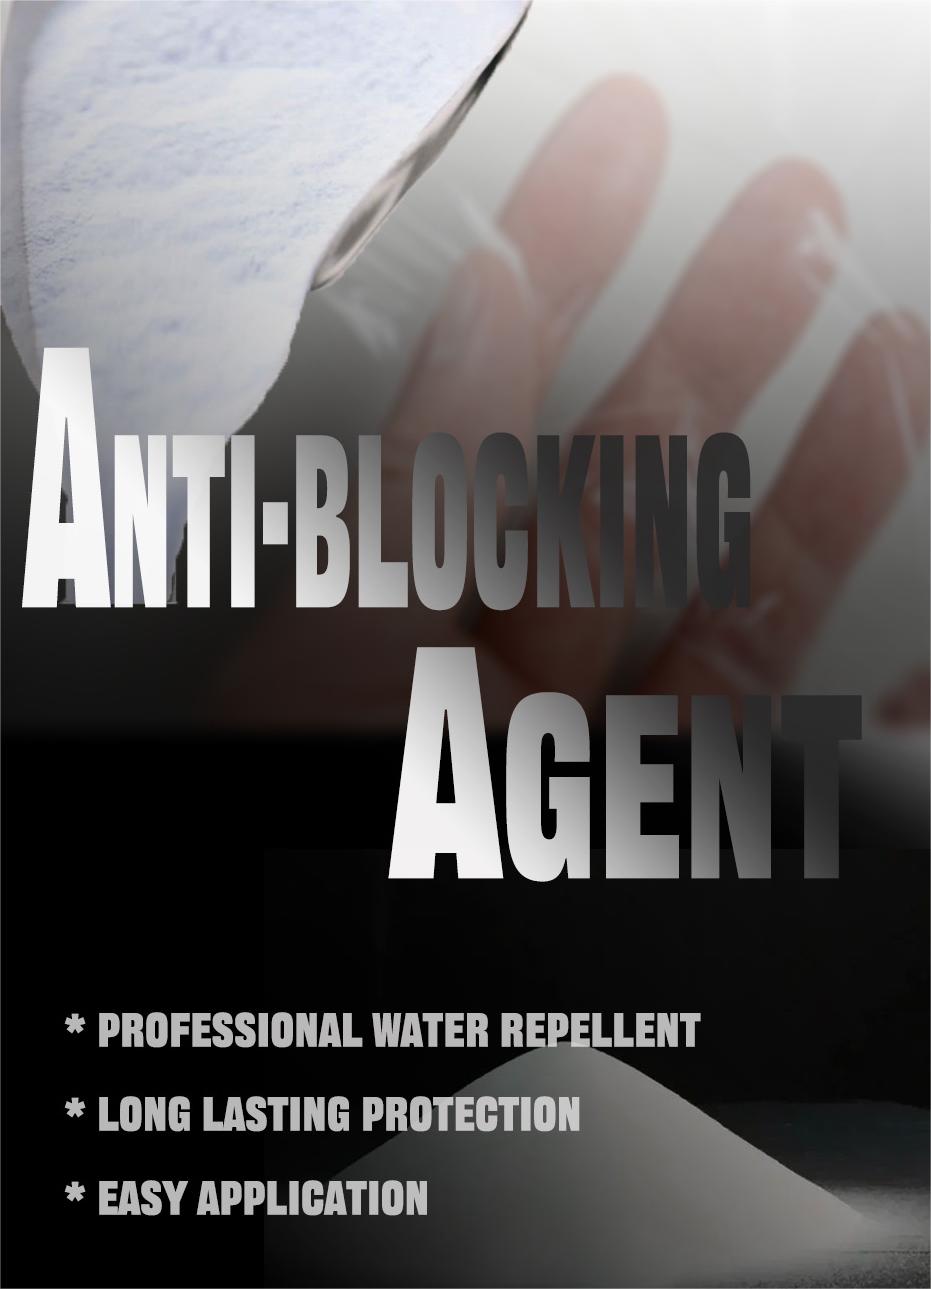 Anti-blocking agent1